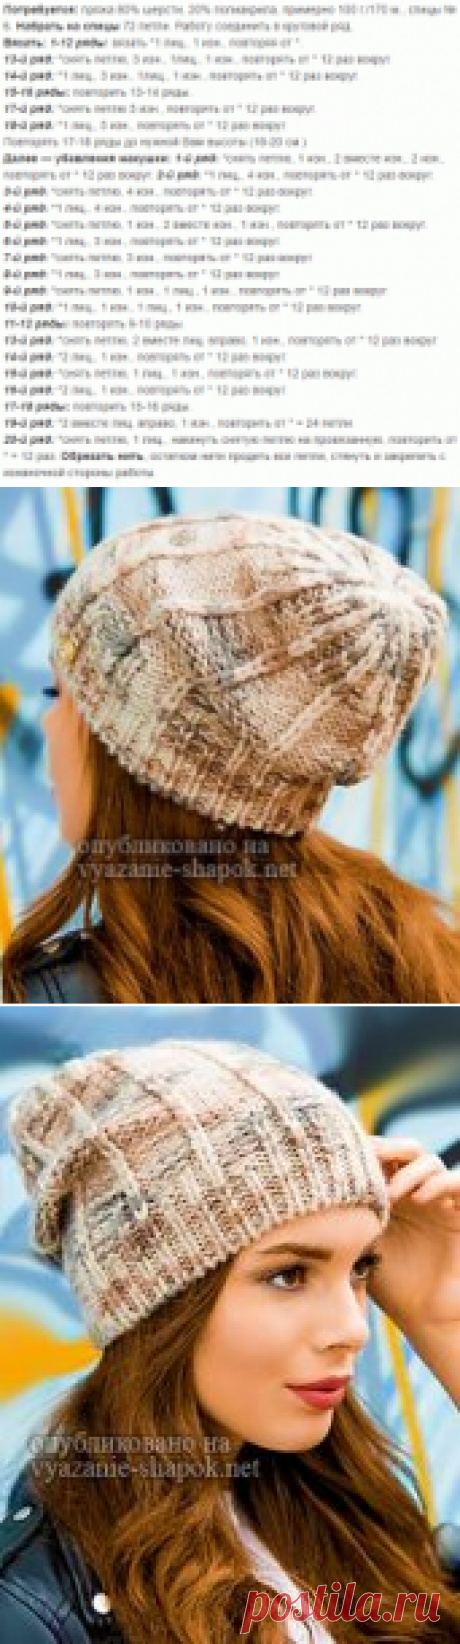 Молодёжная шапка Нэлли для девушек спицами | Вязание Шапок - Модные и Новые Модели